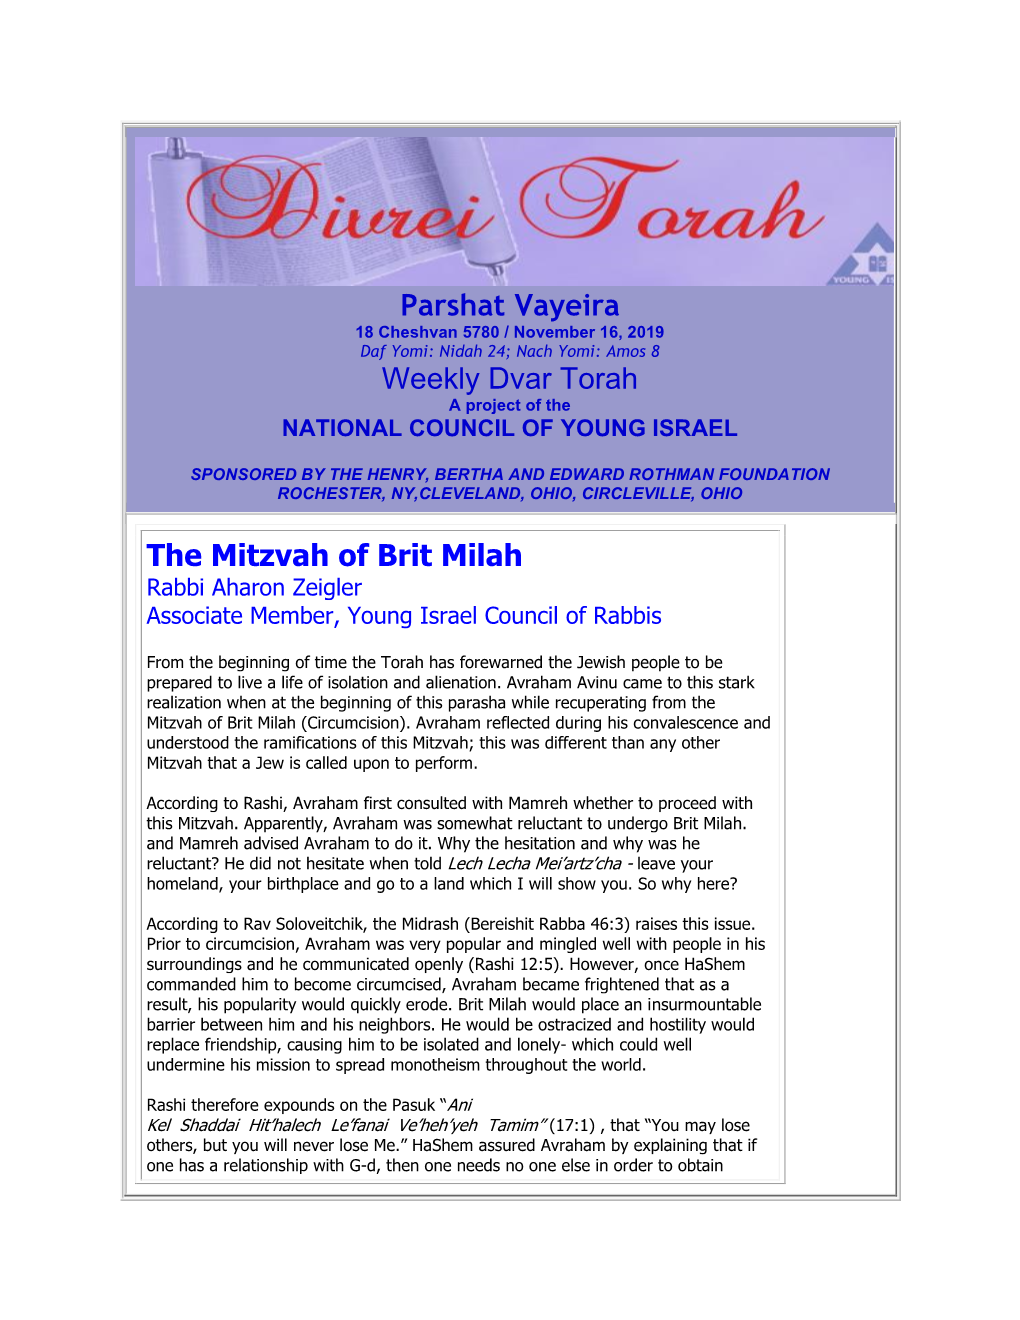 Parshat Vayeira Weekly Dvar Torah the Mitzvah of Brit Milah